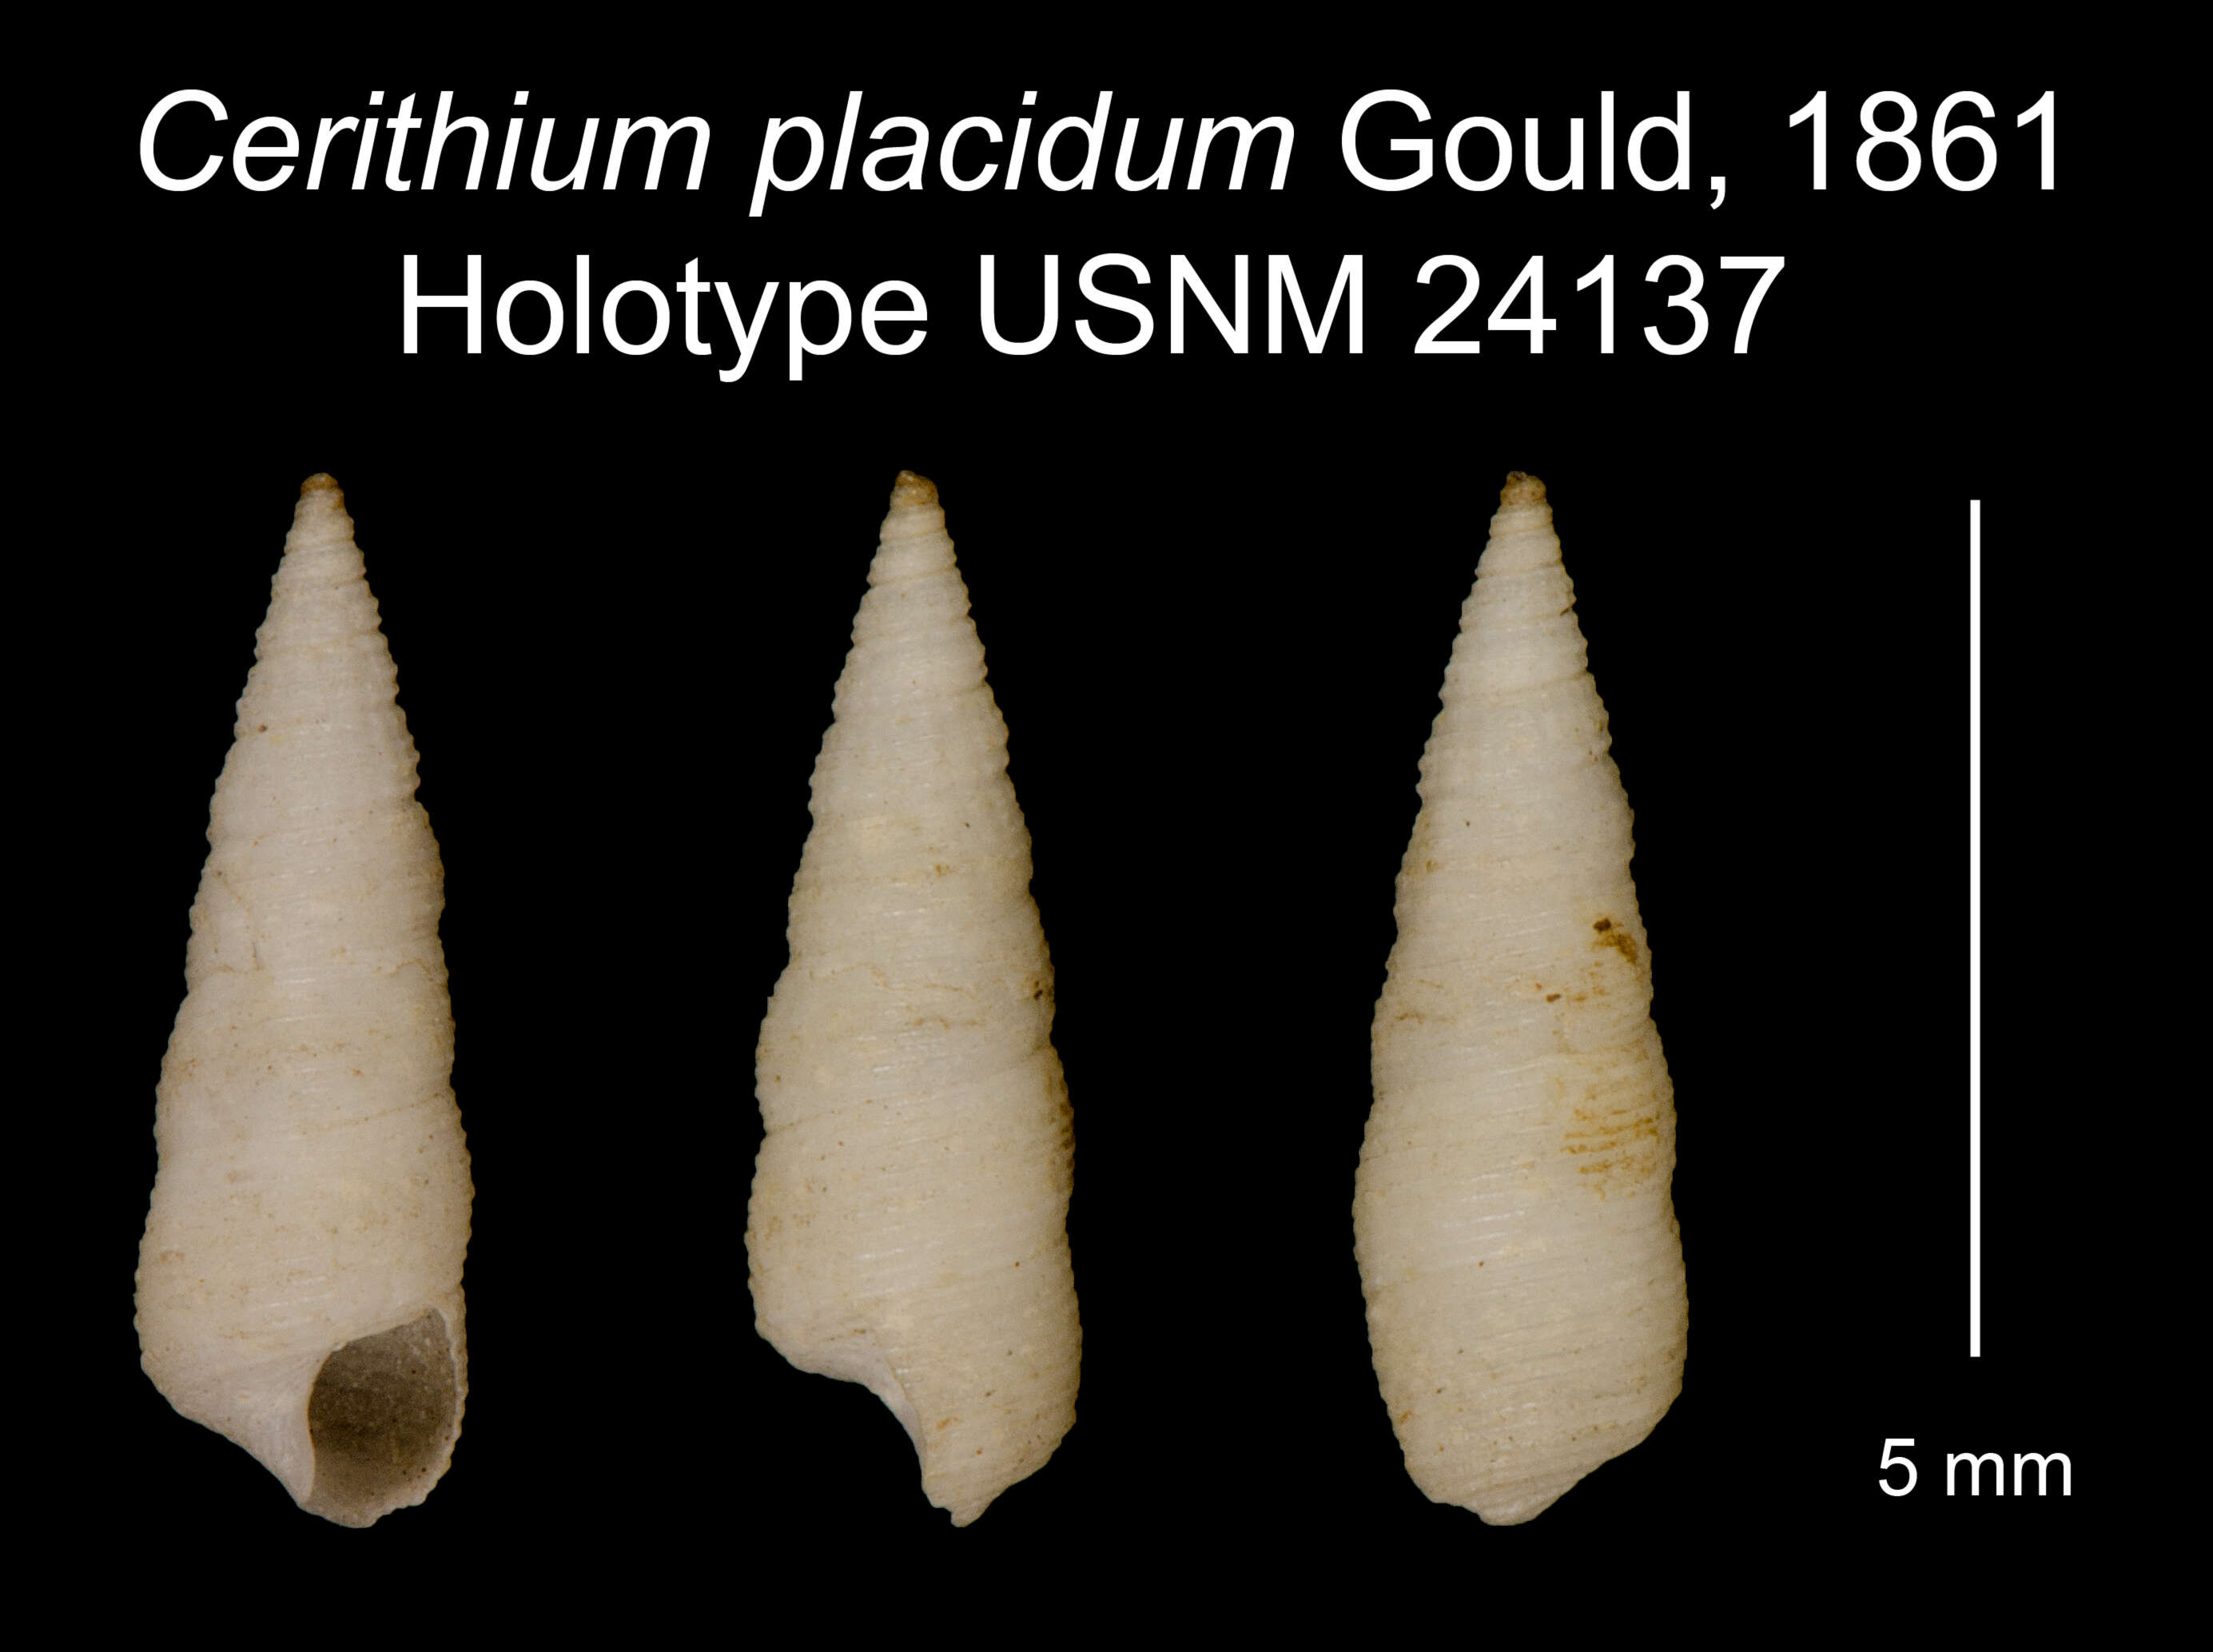 Image of Cerithium placidum Gould 1861